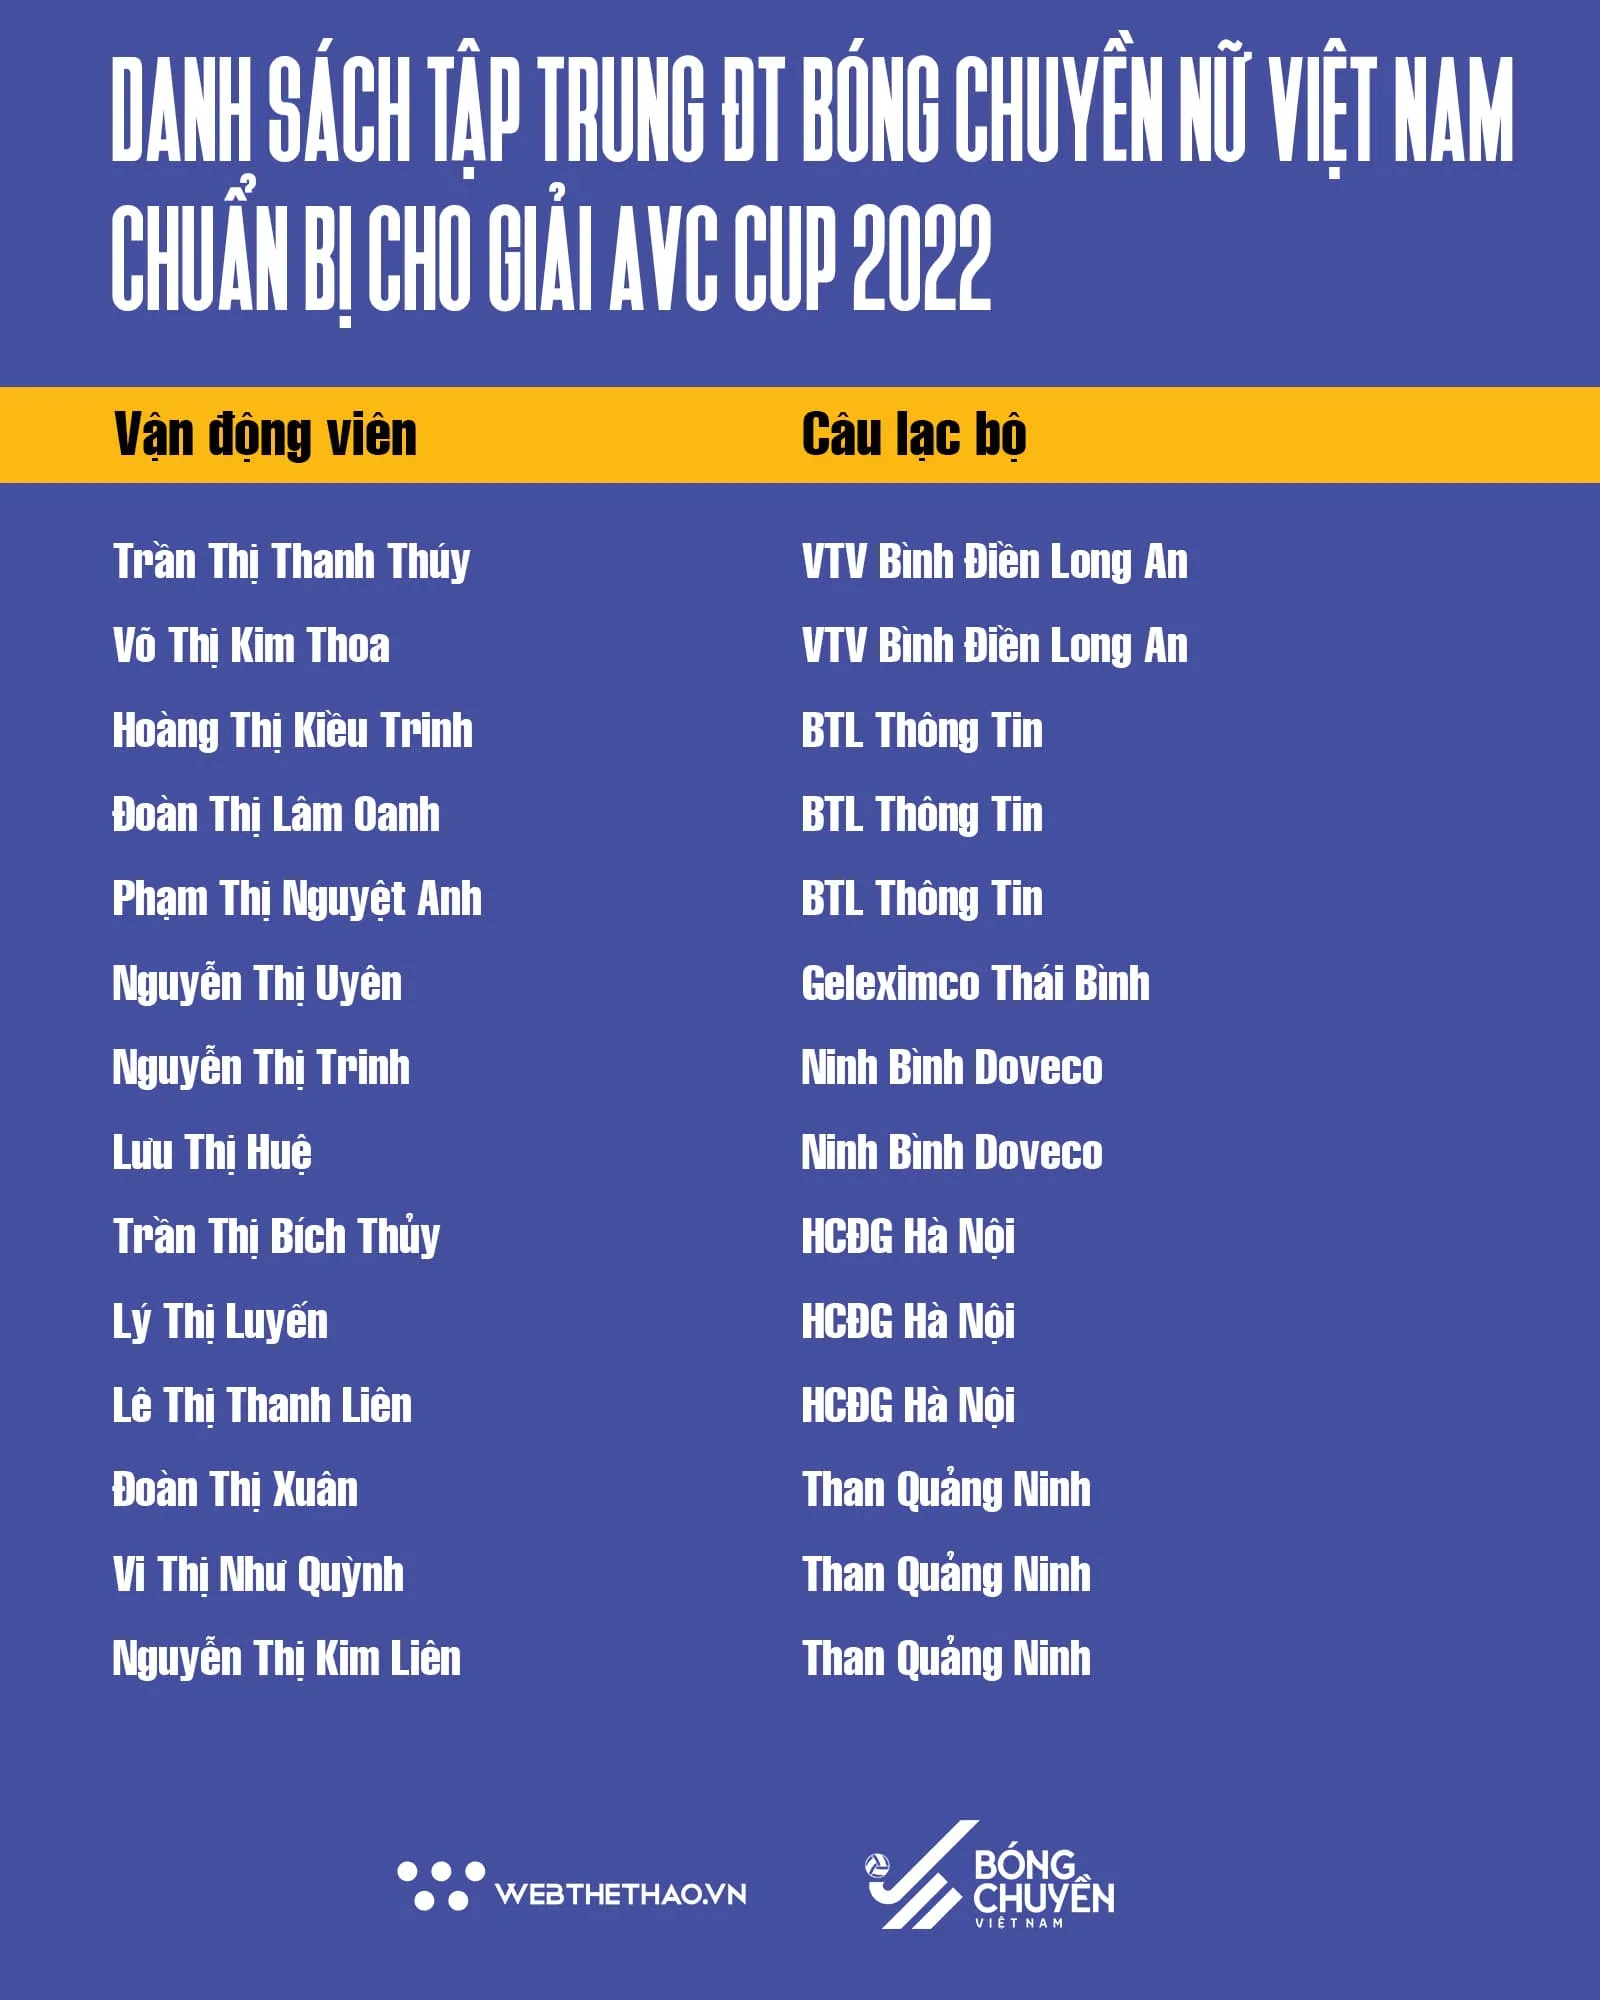 Bóng chày Việt Nam đánh dấu mốc lịch sử - Danh sách 14 cầu thủ ĐT Việt Nam dự AVC Cup 2022